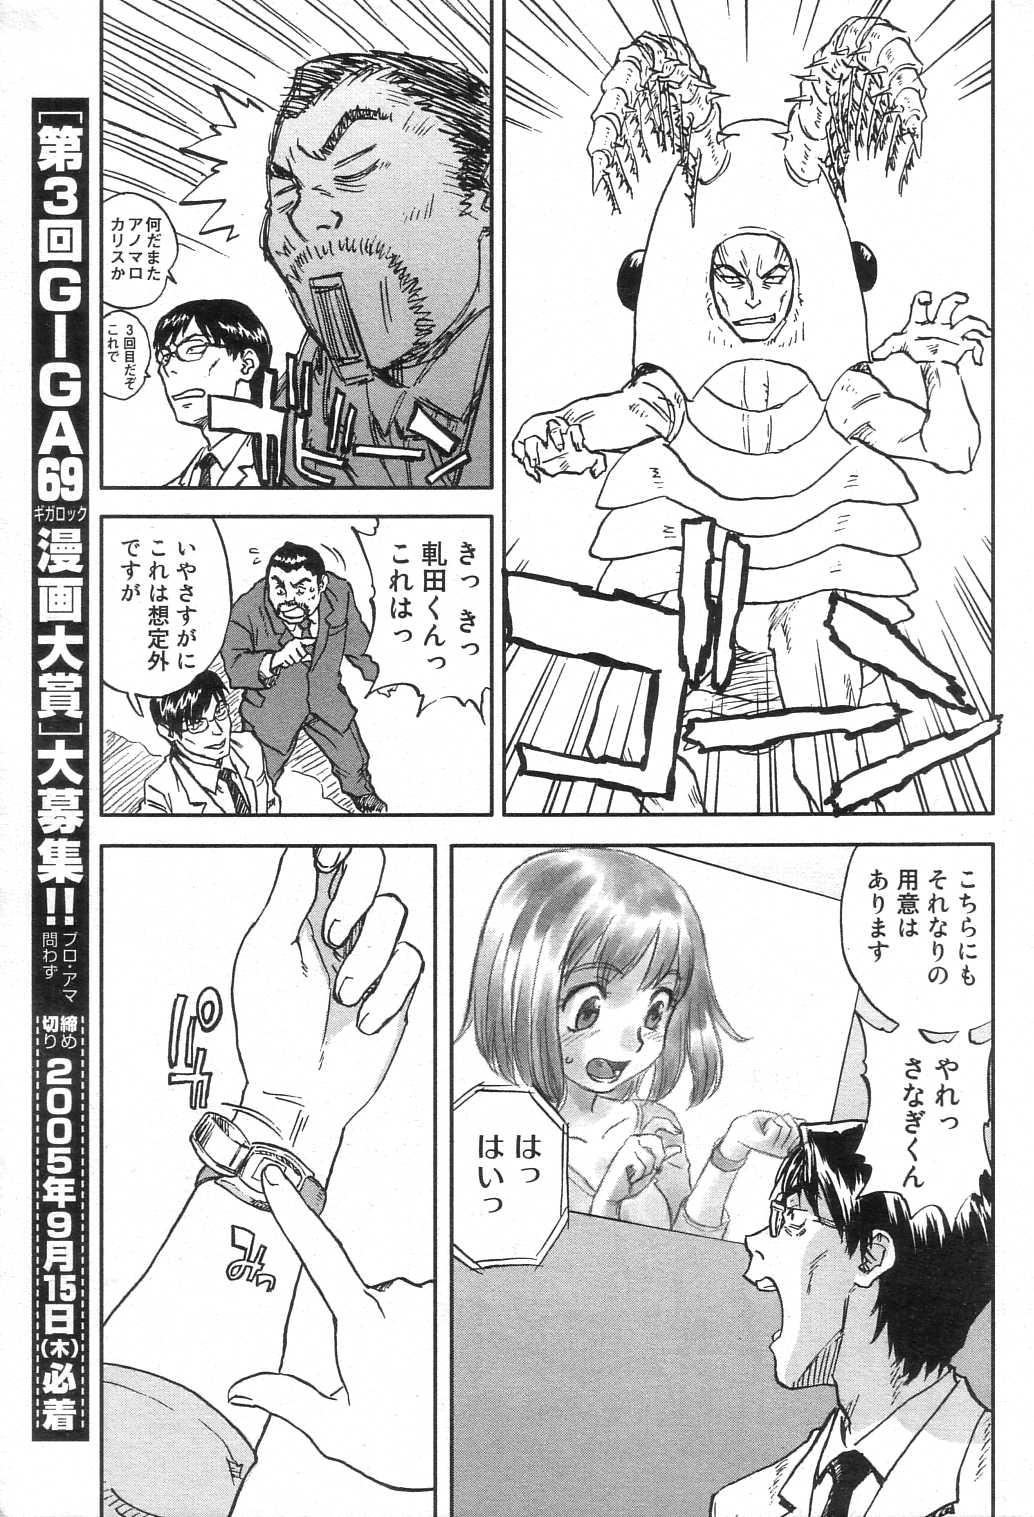 GIGA69 2005-08 Vol. 8 ギガロック 2005年8月号 Vol.8